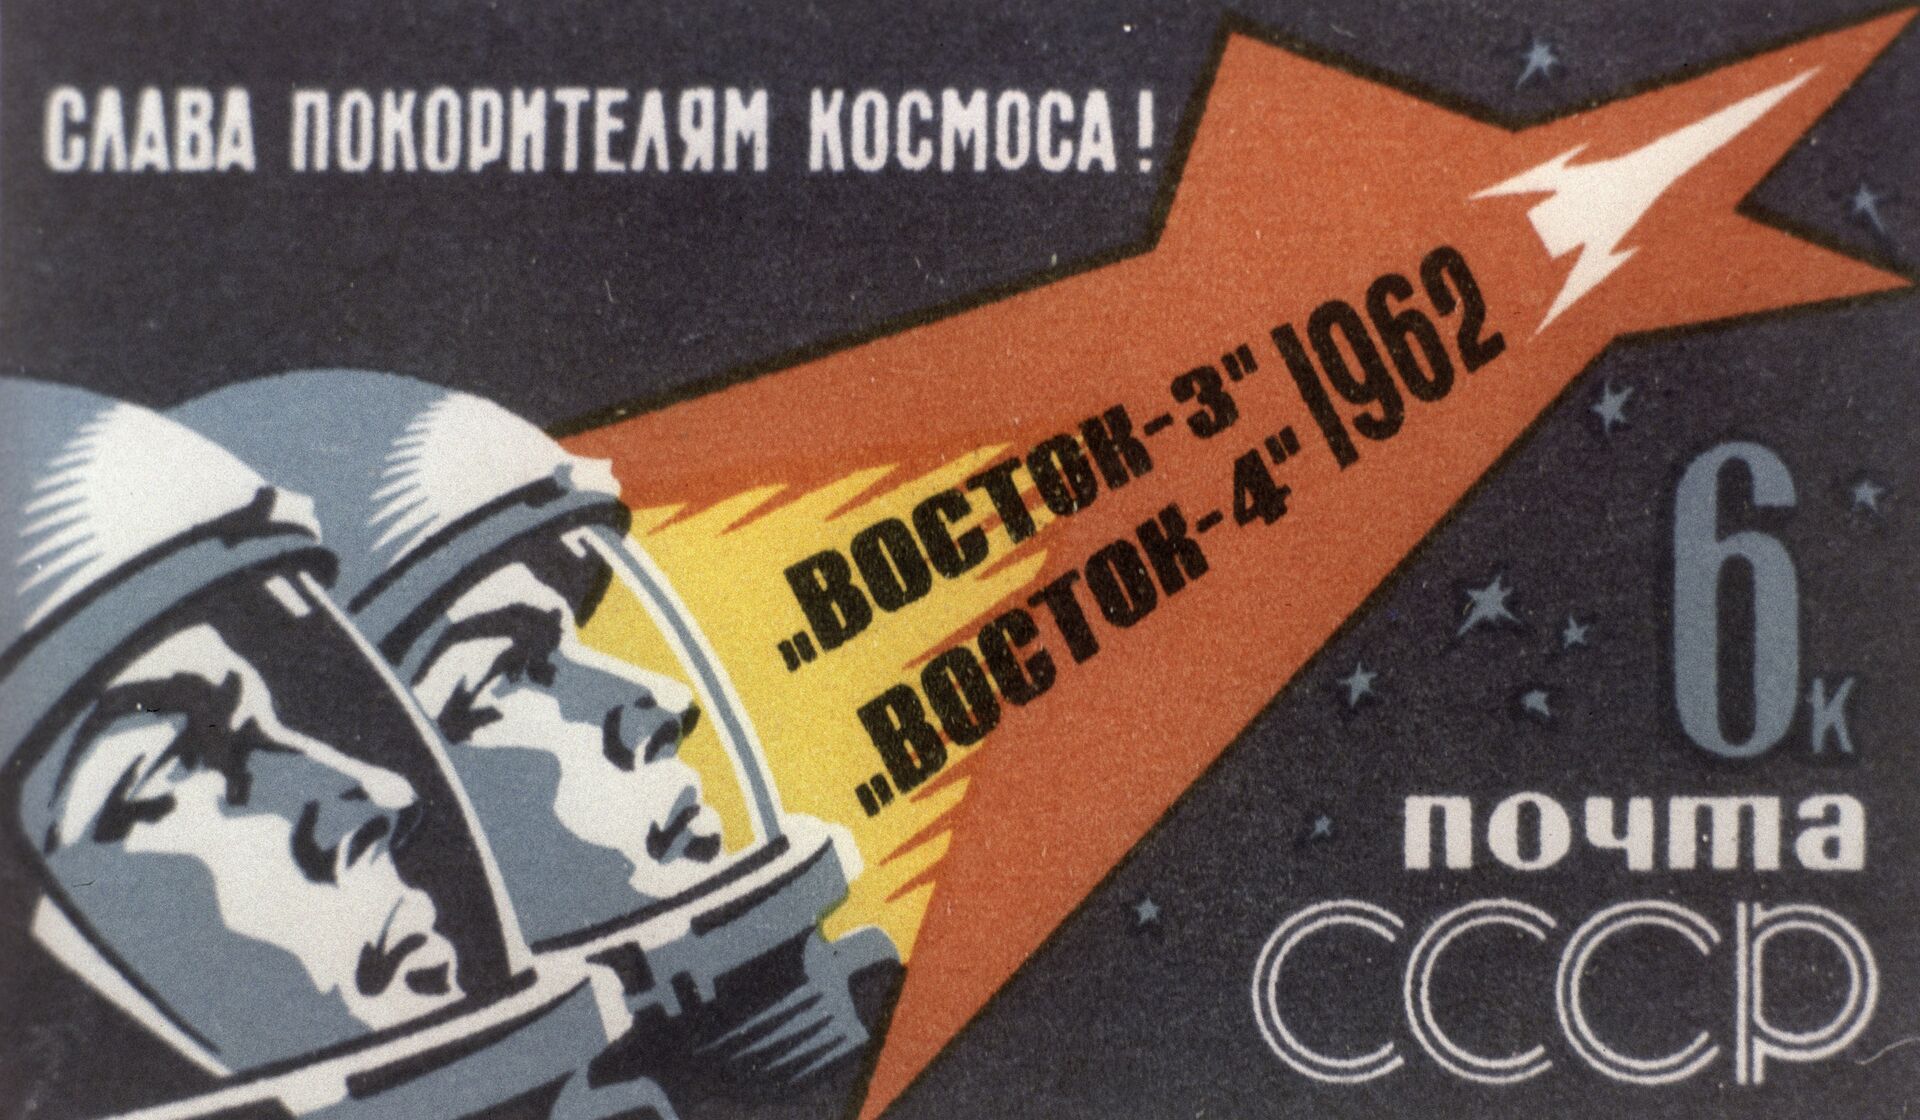 Космонавты Николаев и Попович на почтовой марке  - РИА Новости, 1920, 05.10.2020